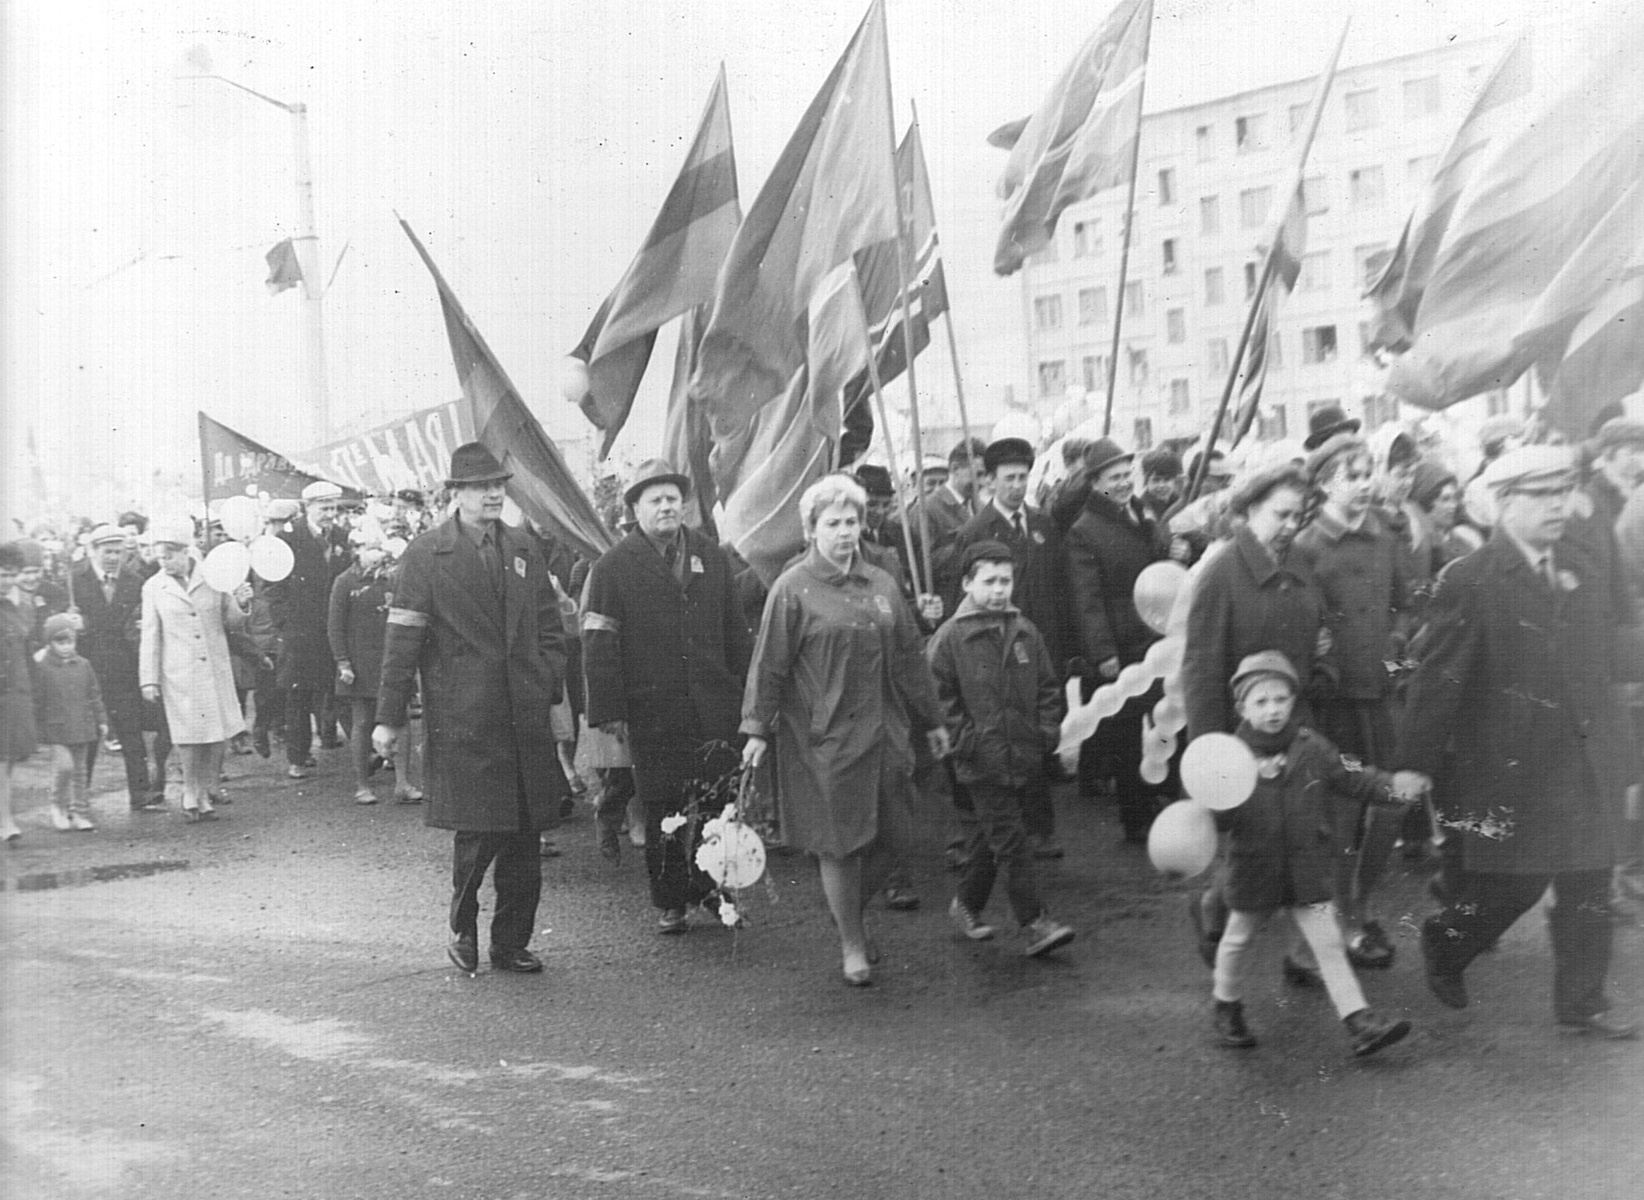 Горожане на праздничной демонстрации. В руках люди несут флаги, ветки и шарики. Дети участвуют в шествии в сопровождении взрослых